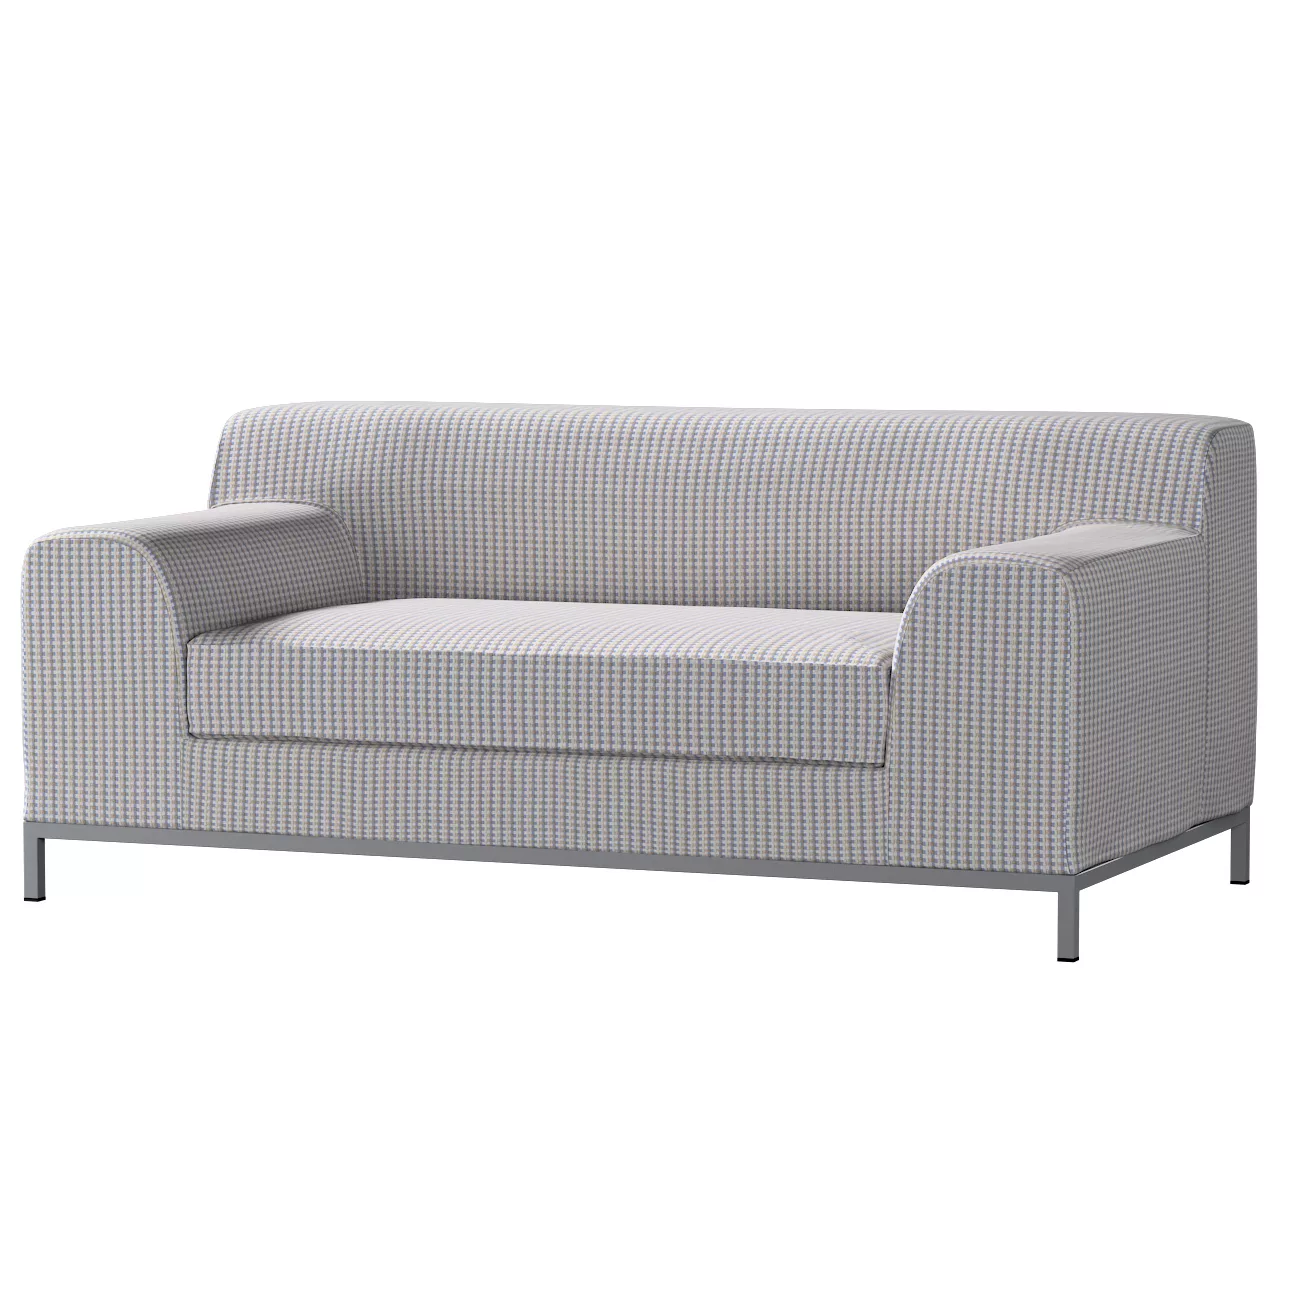 Bezug für Kramfors 2-Sitzer Sofa, beige-blau, Sofahusse, Kramfors 2-Sitzer, günstig online kaufen